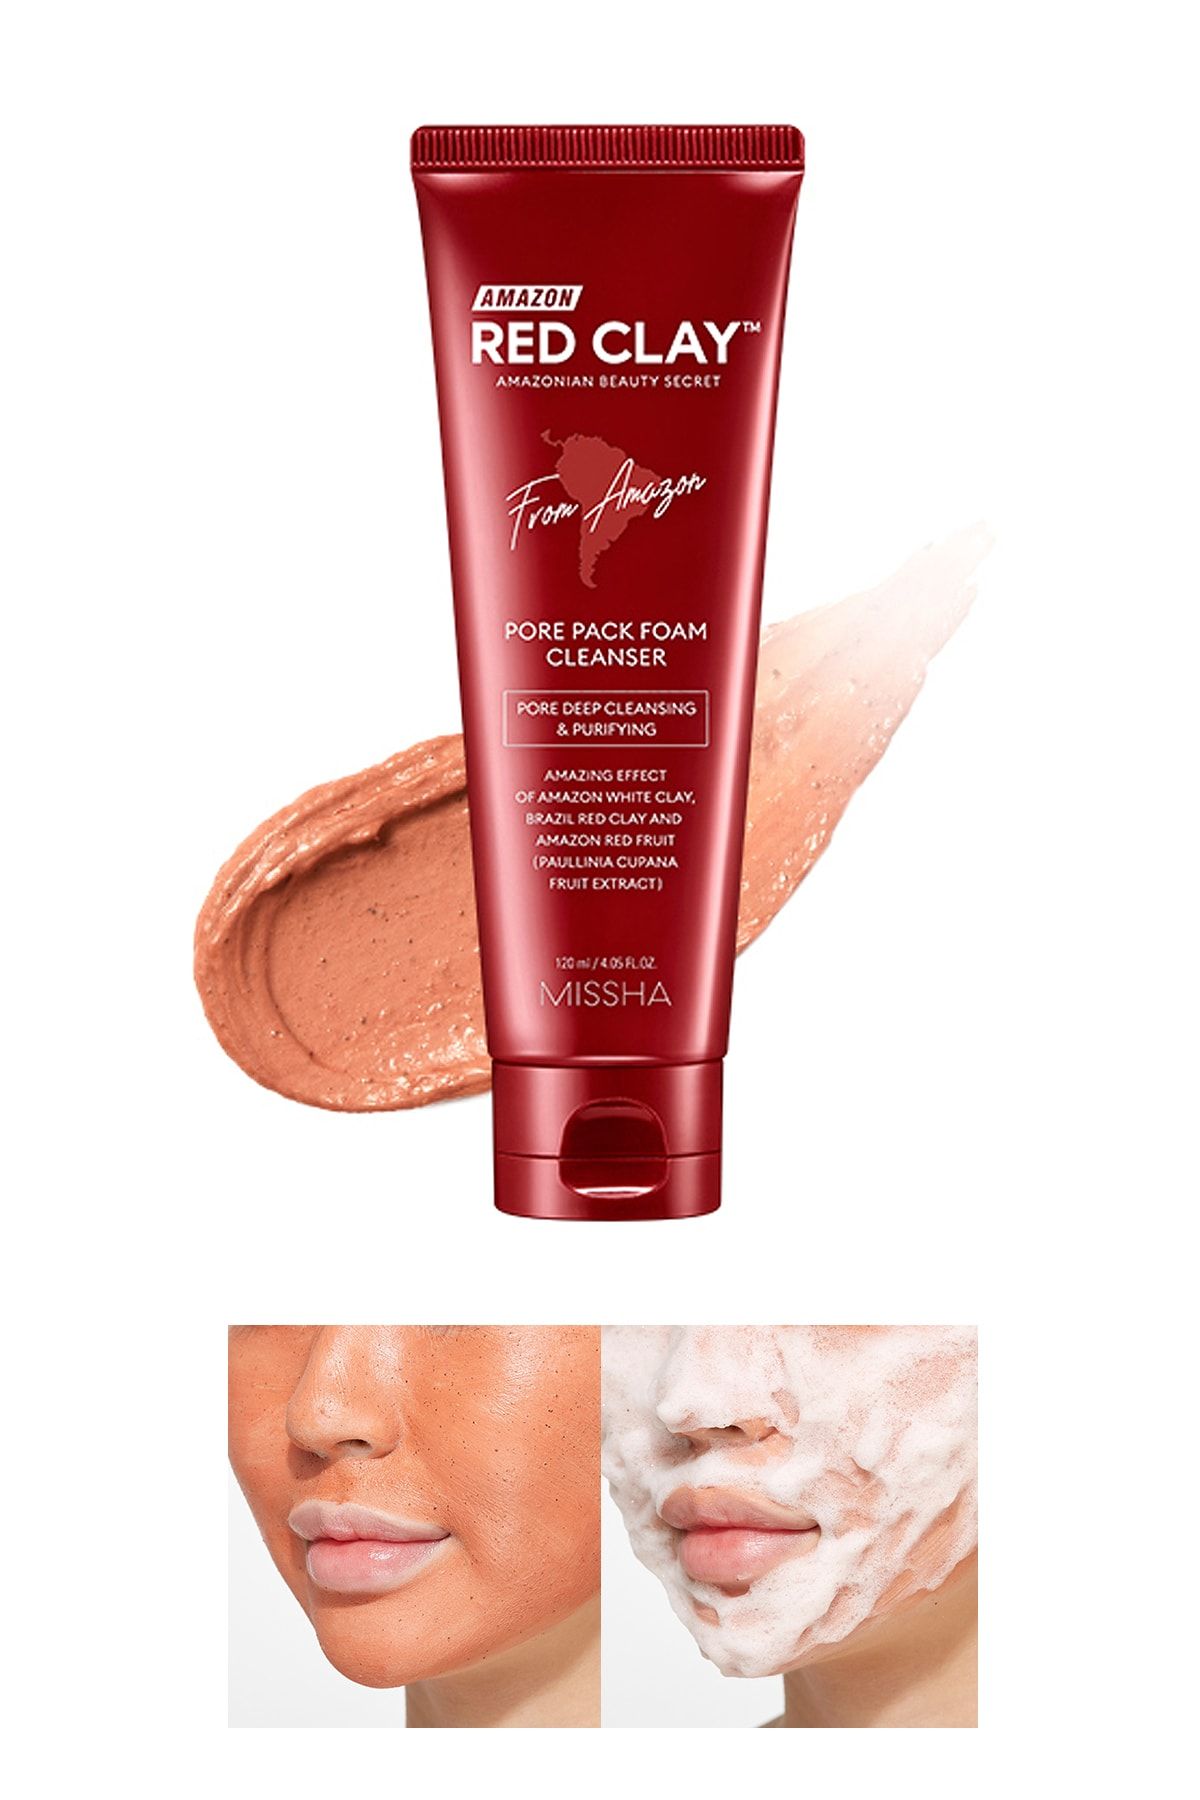 Missha Gözenekli Ciltler İçin Amazon Kili Temizleyici 120ml Amazon Red Clay Pore Pack Foam Cleanser